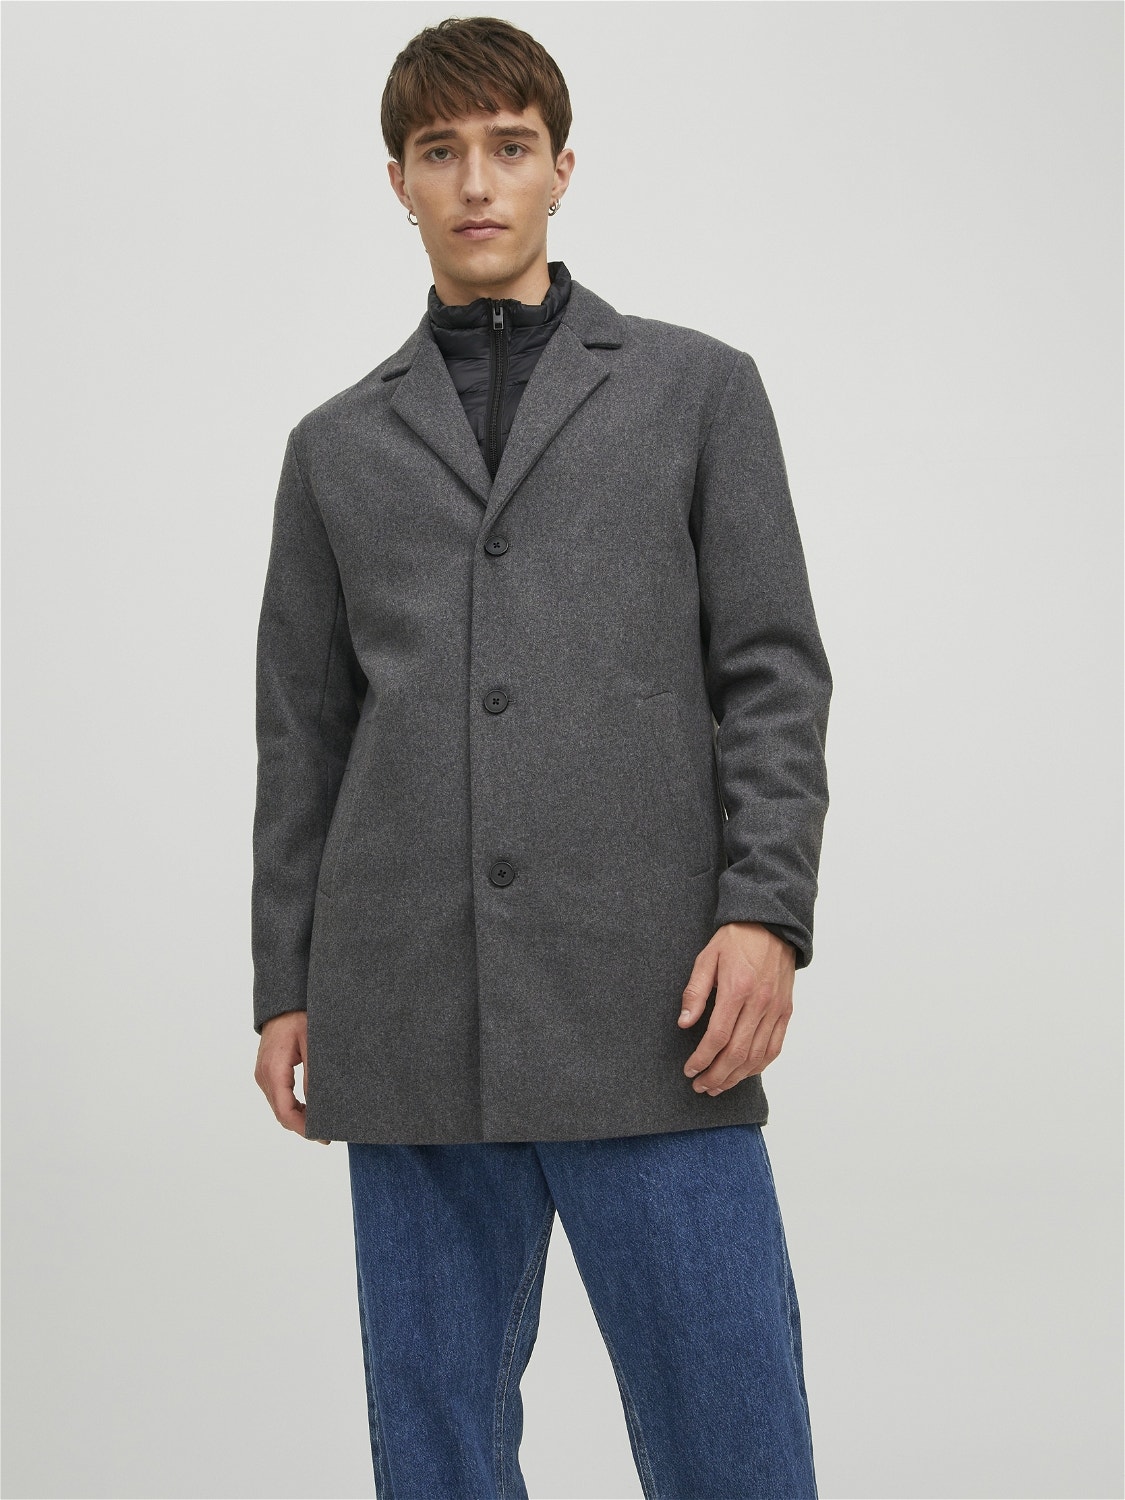 Coat with 20% discount! | Jack & Jones®